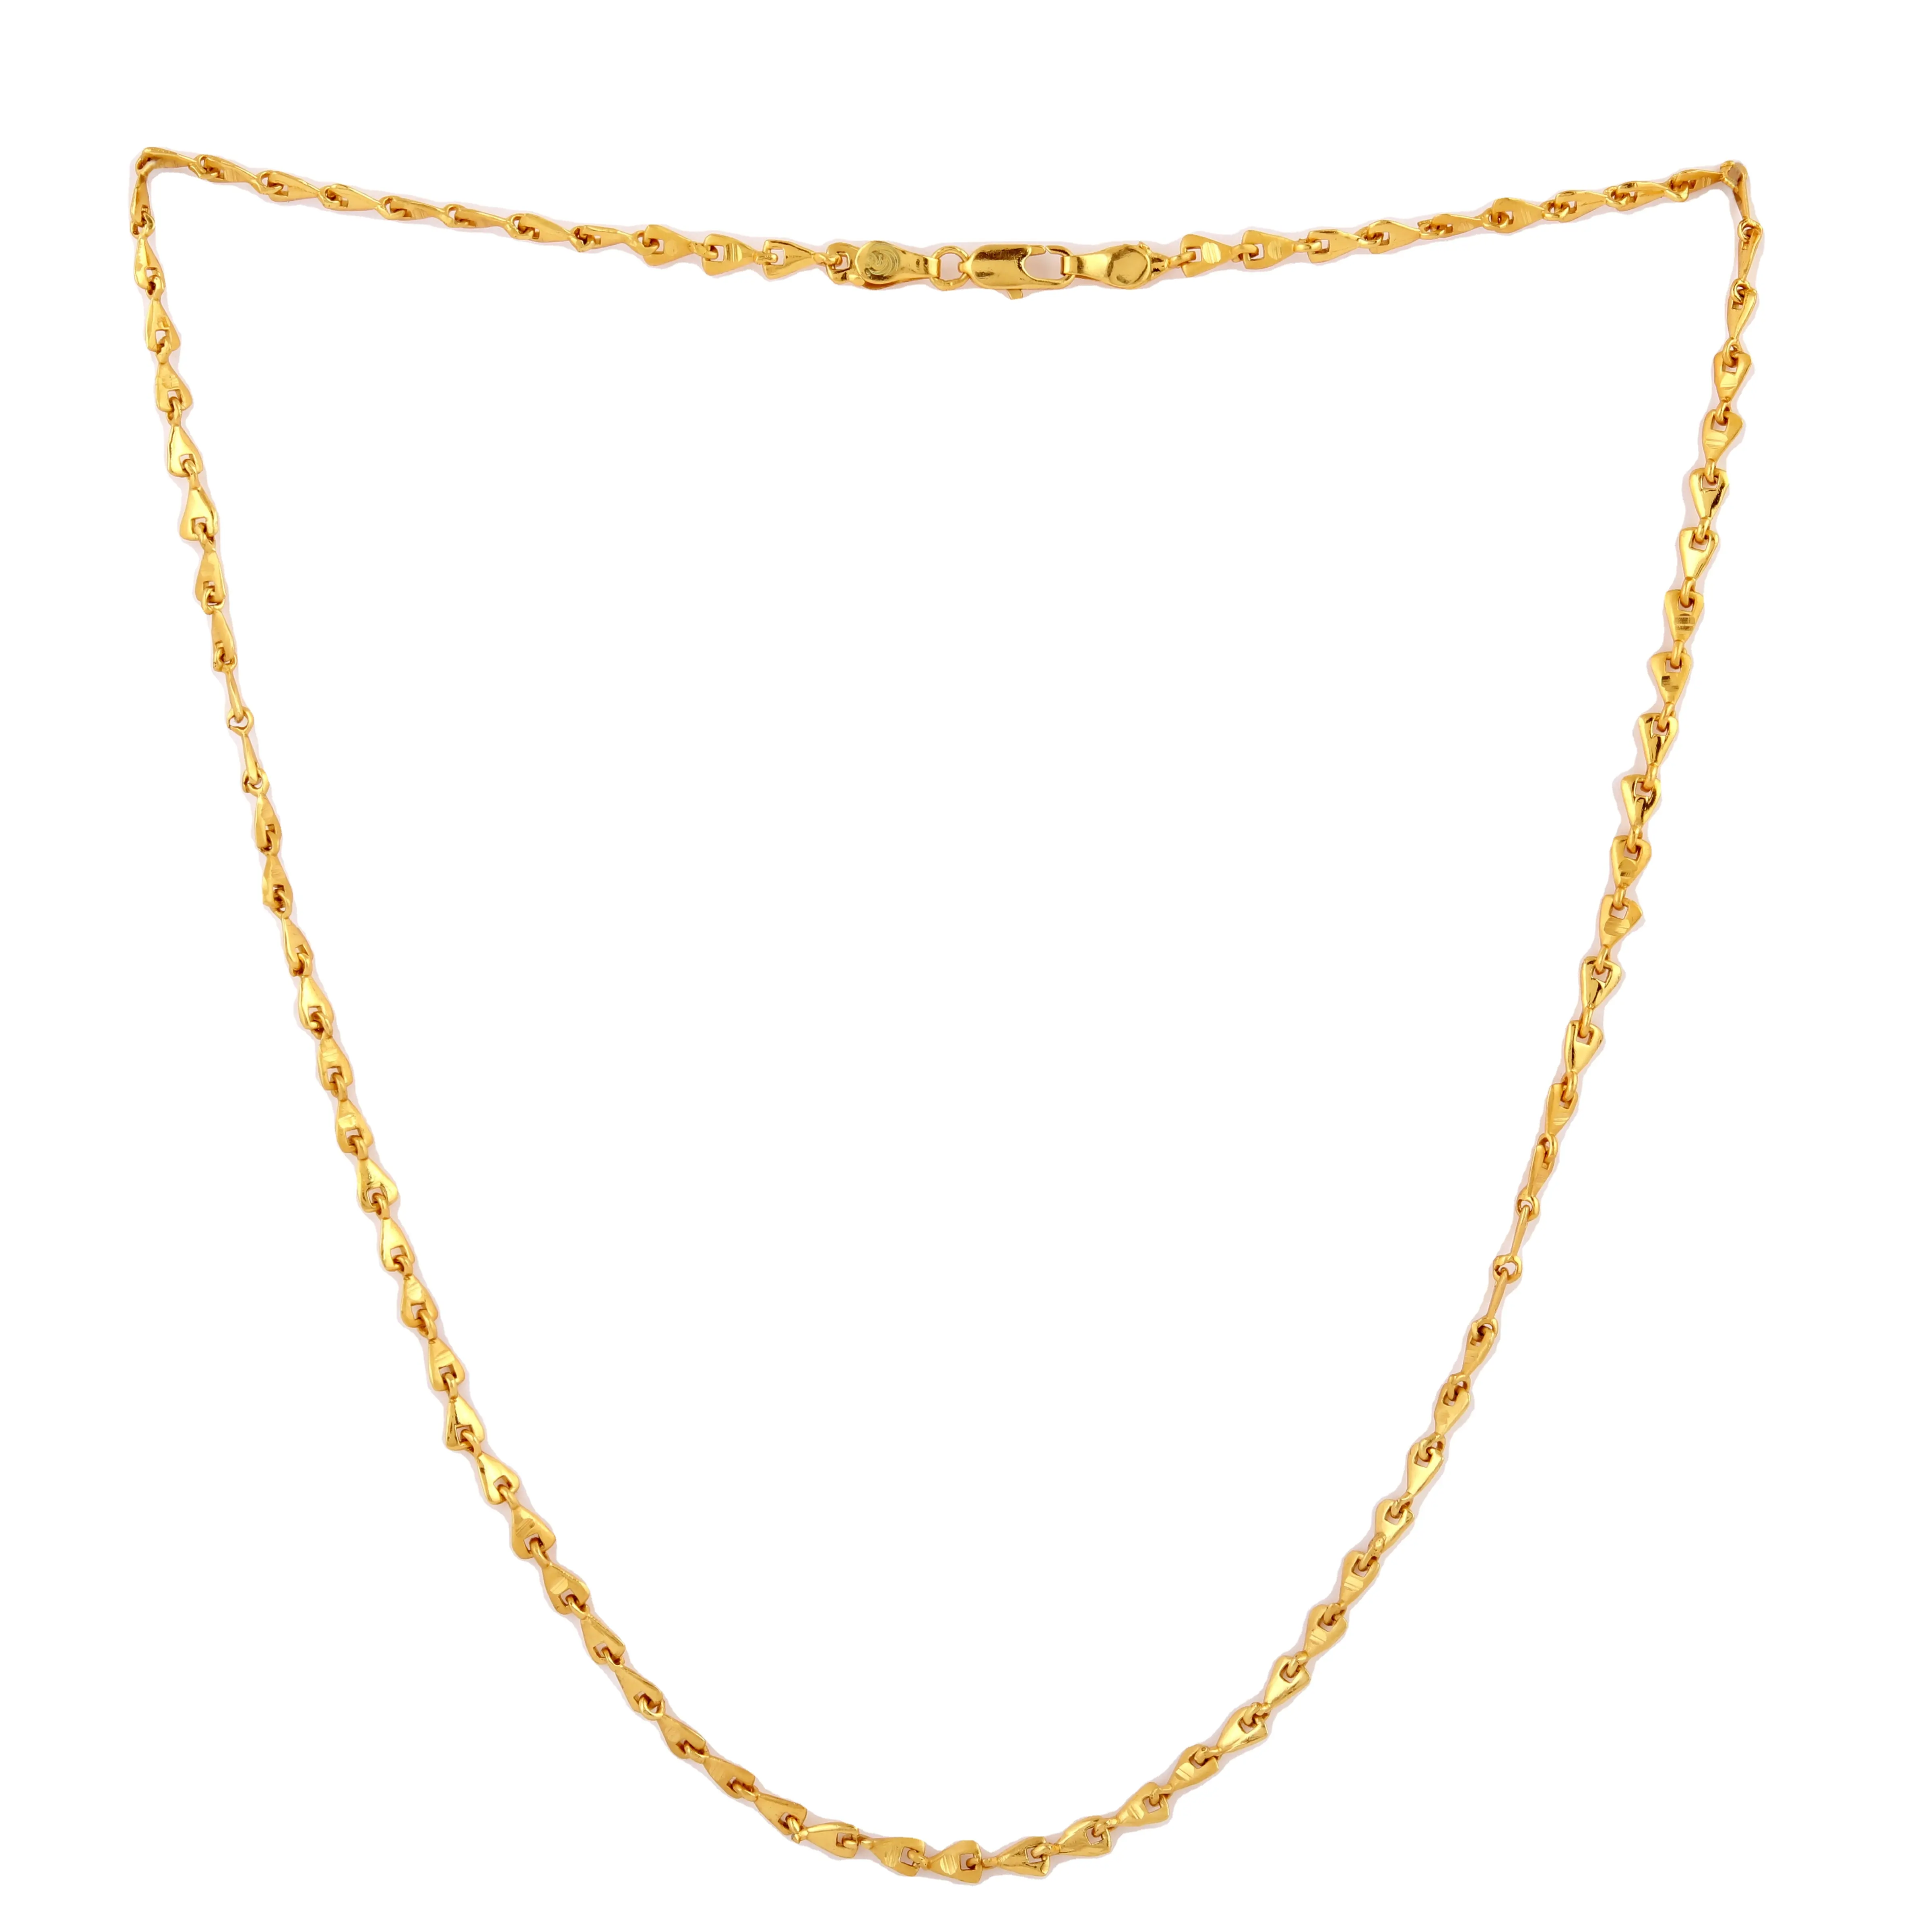 NBC-35 signori nuova catena di fantasia gioielli placcati in oro di migliore qualità per produttore e venditore indiano